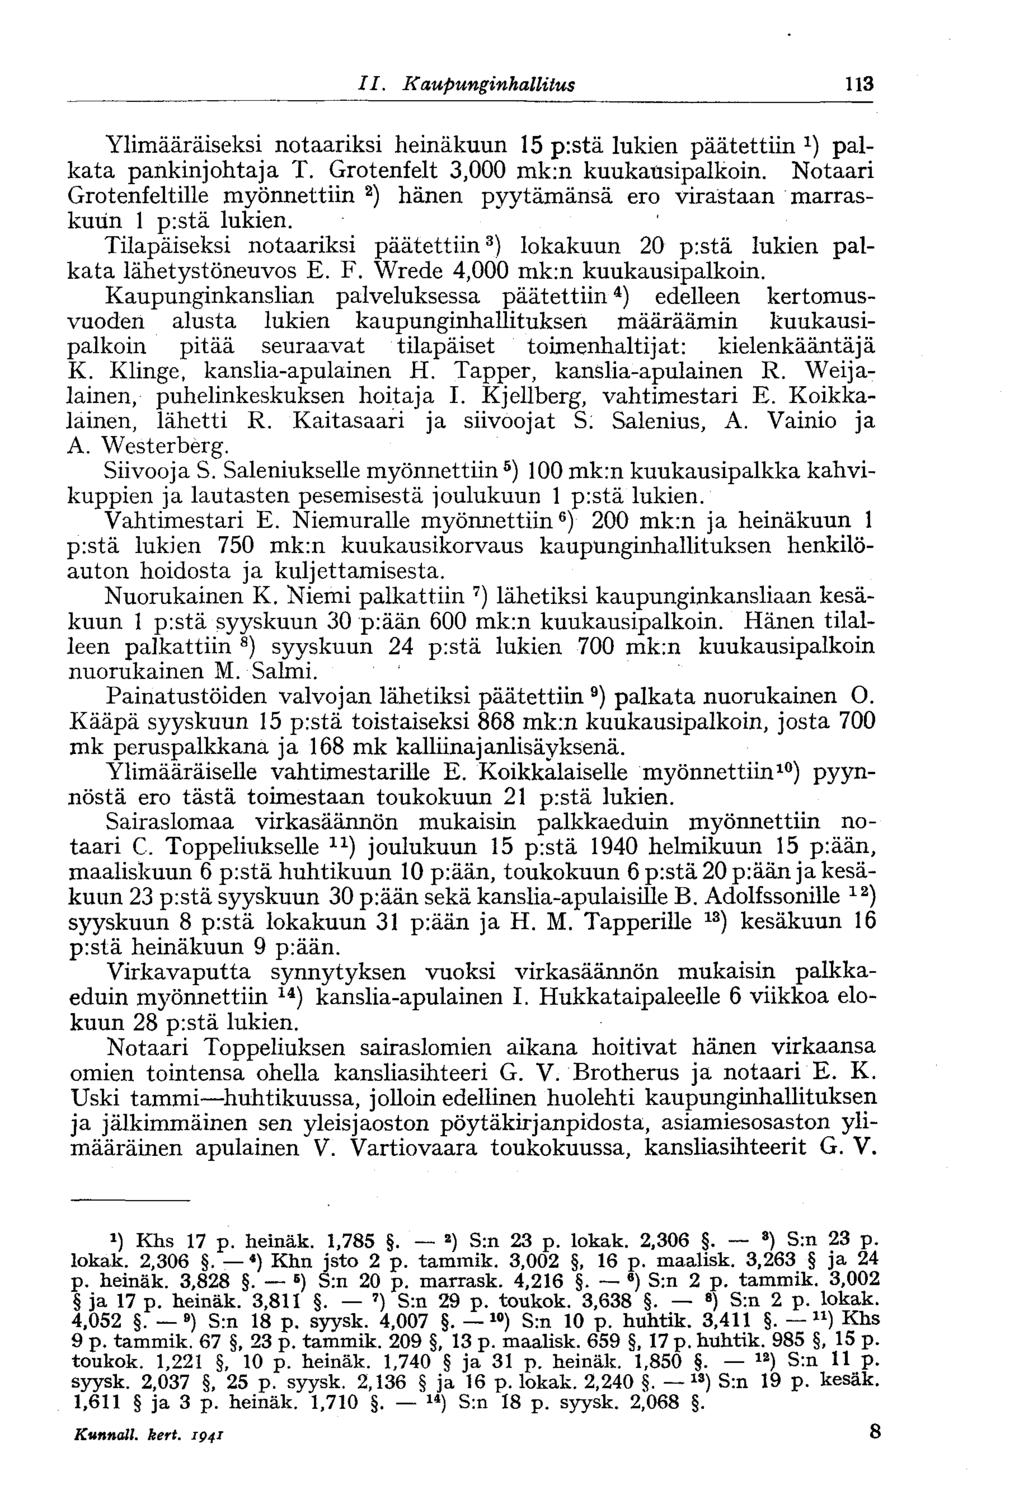 113 II. Kaupunginhallitus Ylimääräiseksi notaariksi heinäkuun 15 p:stä lukien päätettiin palkata pankinjohtaja T. Grotenfelt 3,000 mk:n kuukausipalkoin.